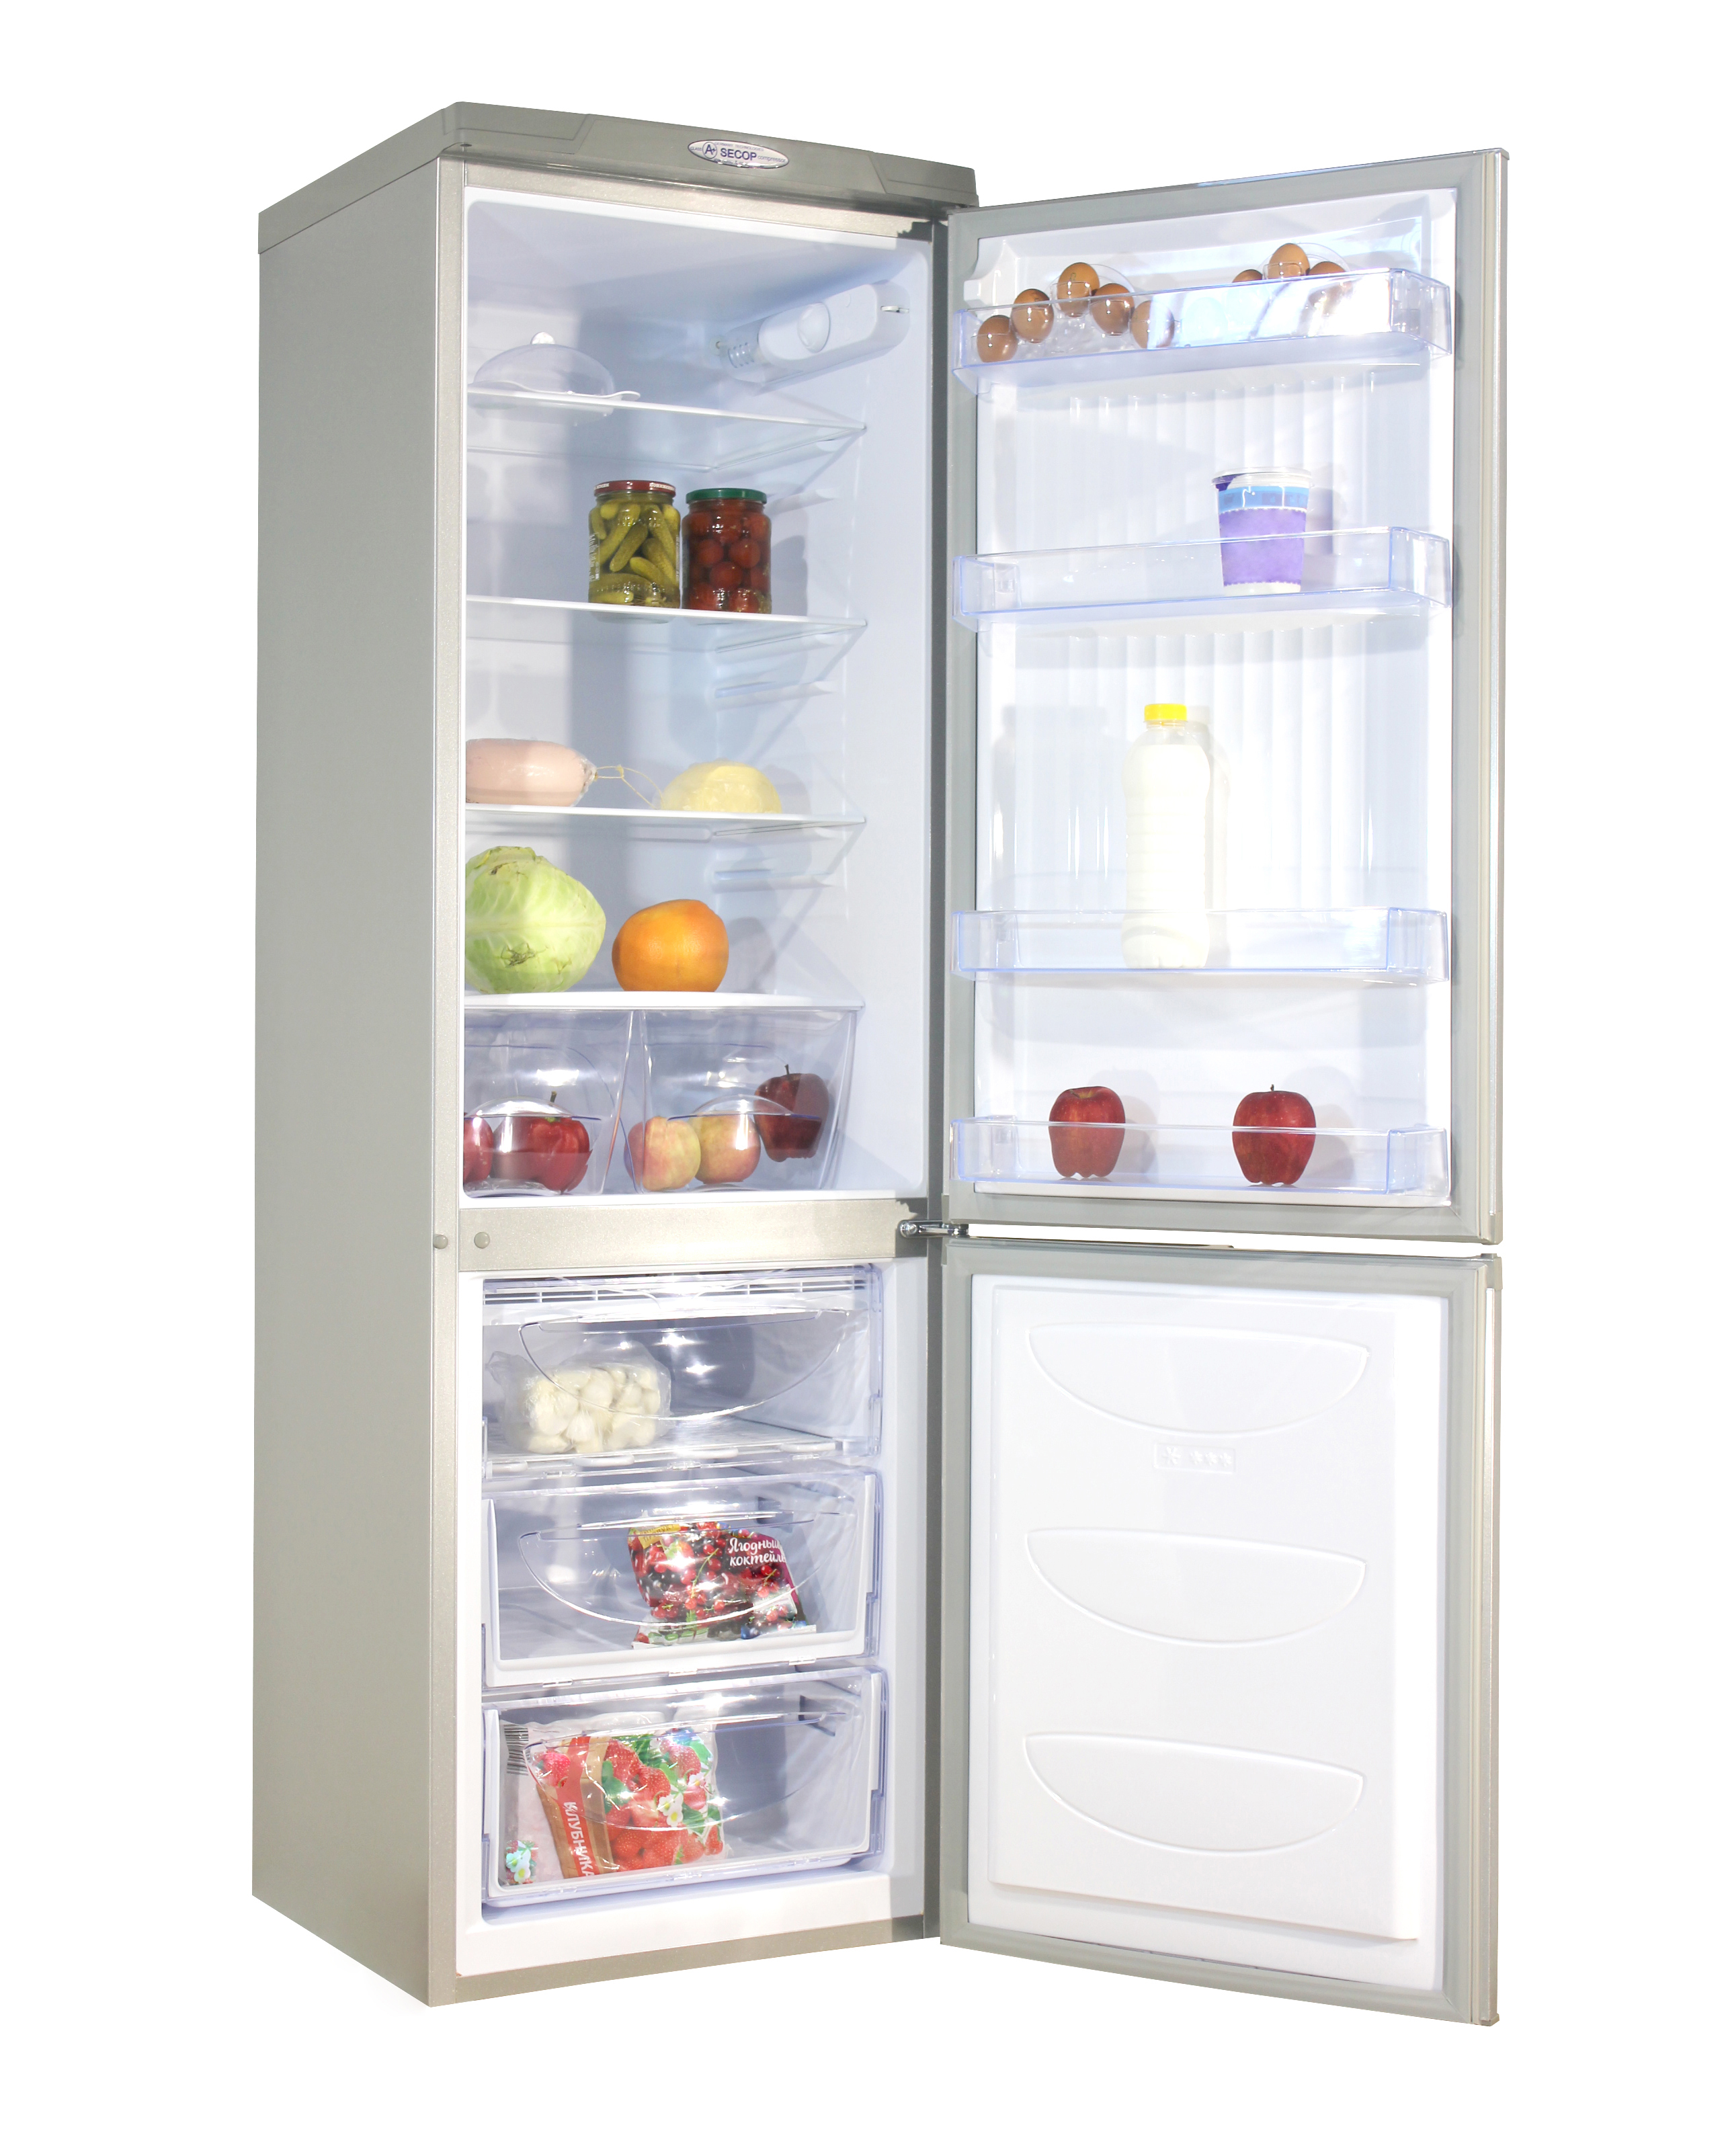 Купить холодильник с доставкой спб. Холодильник don r-291 mi. Холодильник don r 291 металлик искристый. Холодильник don r-291 ng нерж.сталь. Холодильник don r-290 ng.